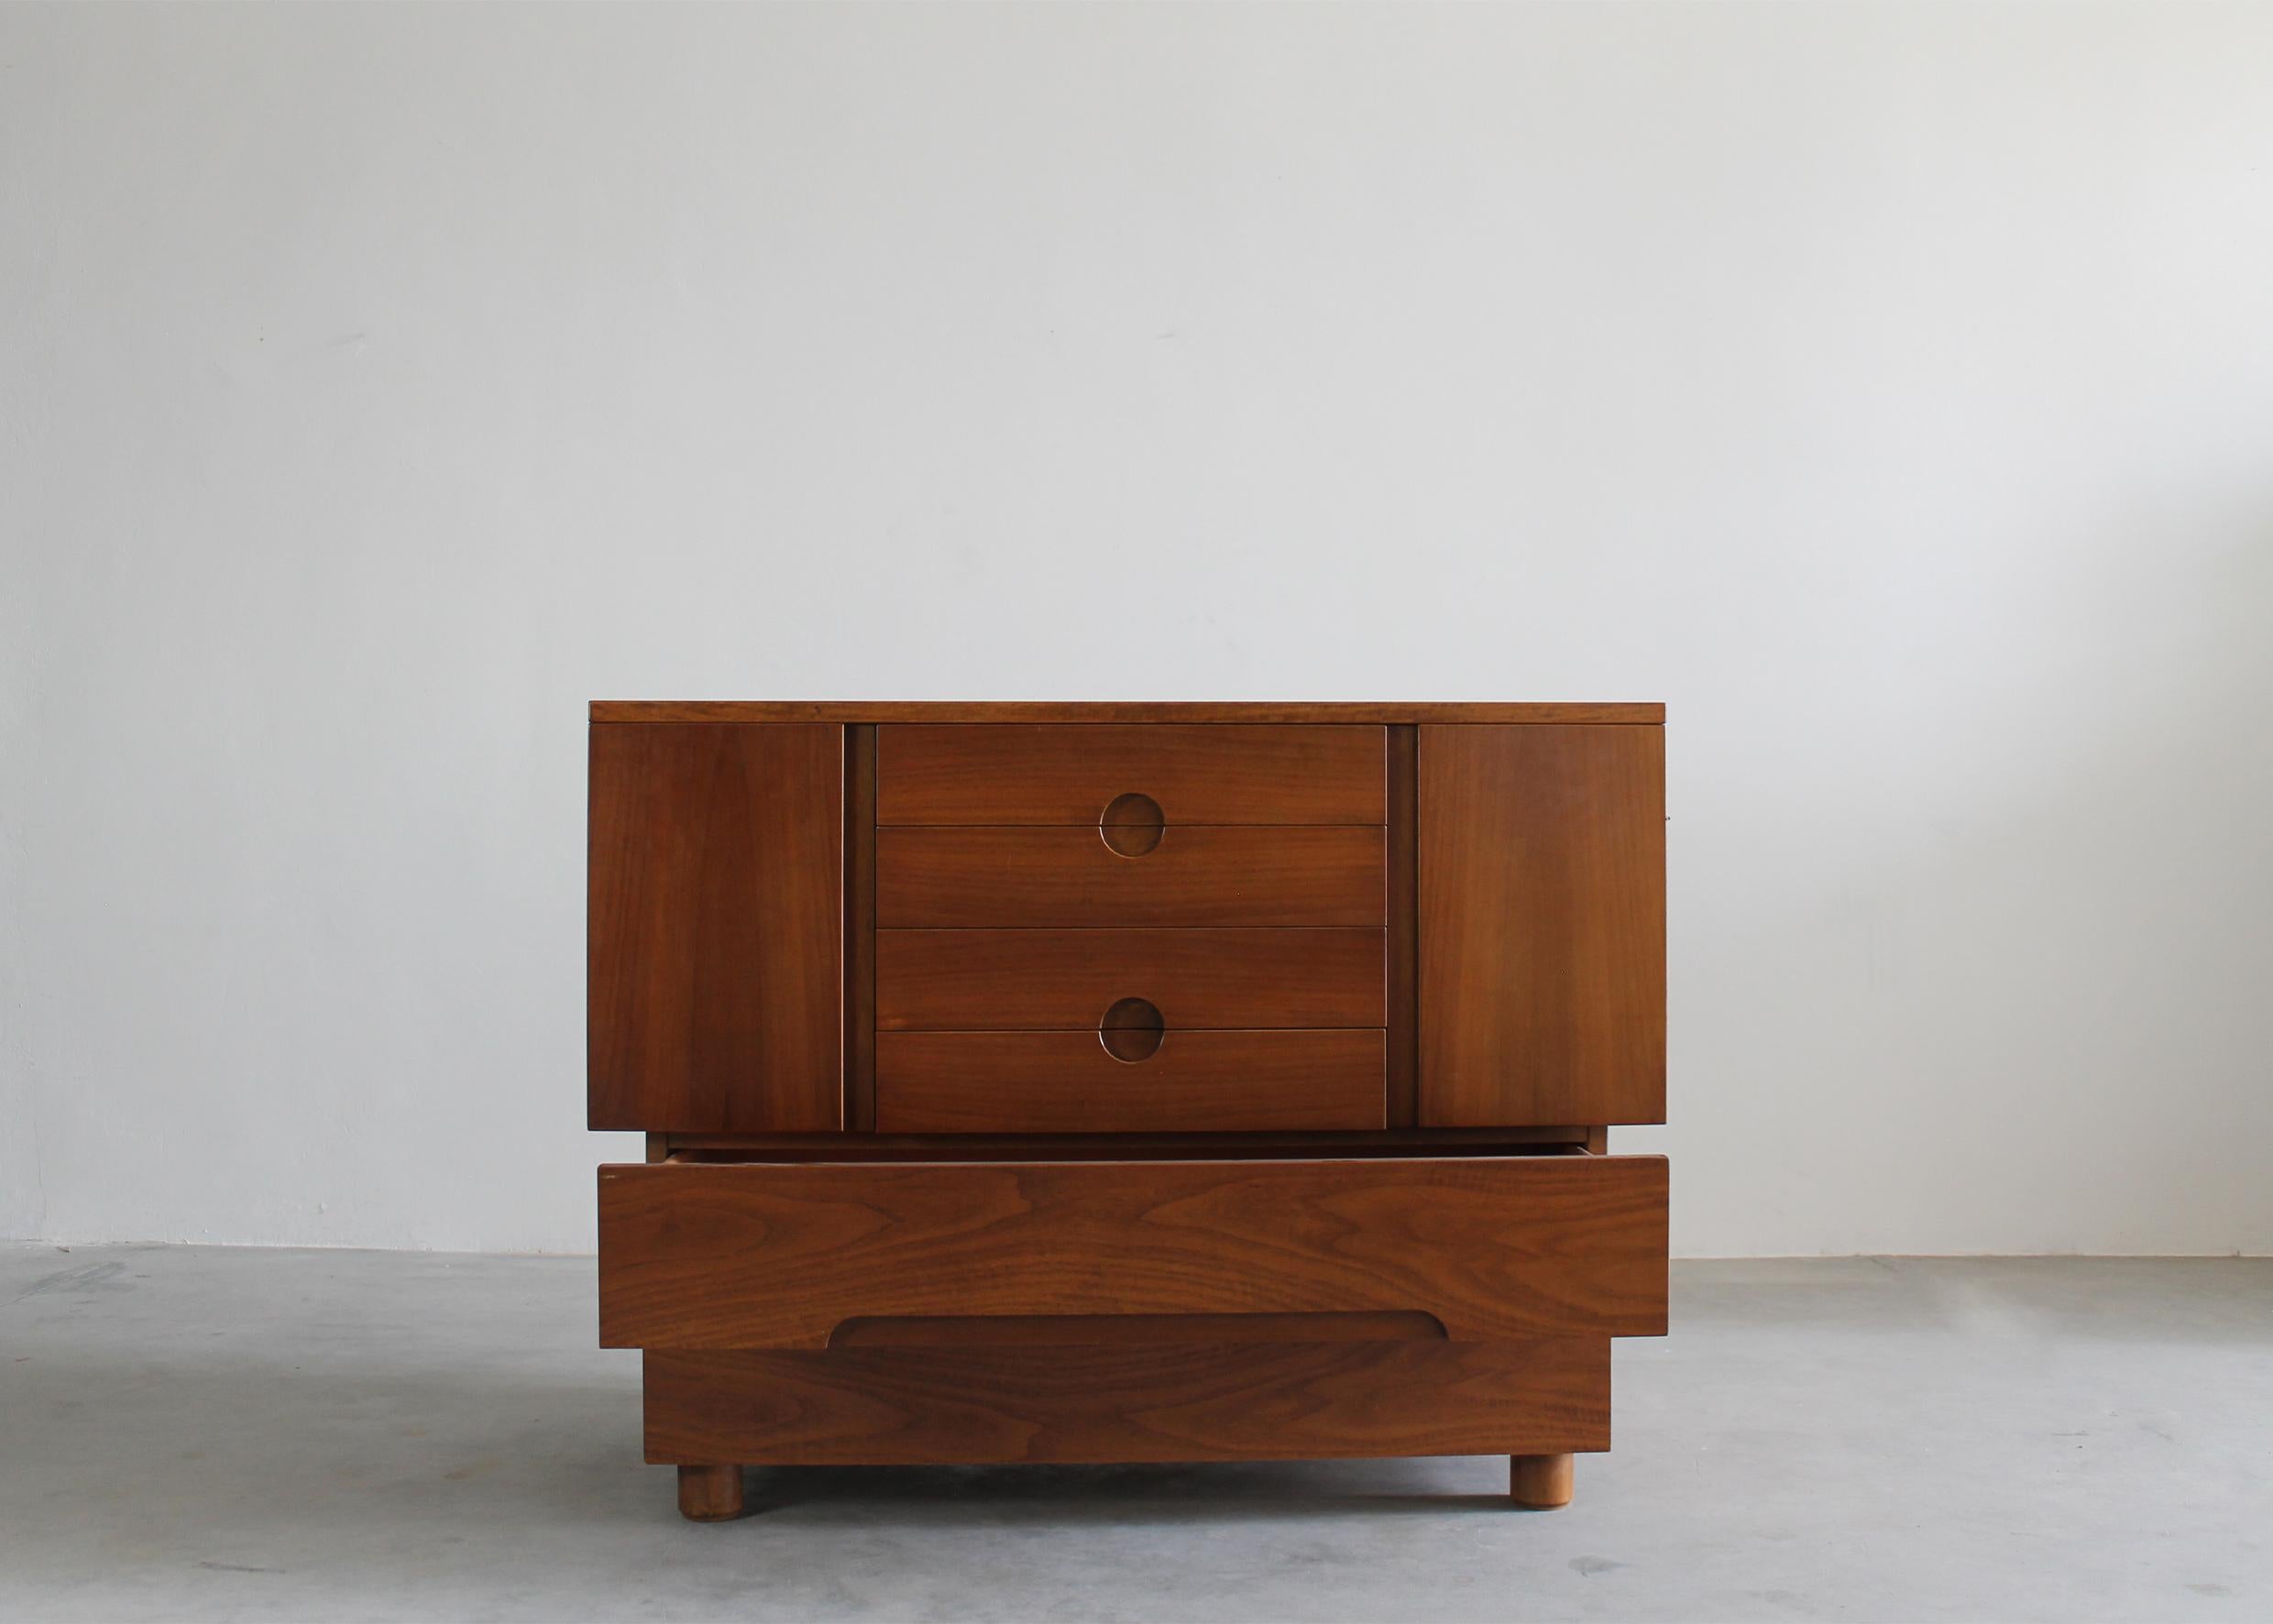 Autre Giovanni Michelucci Cabinet Serena en Wood Wood par Poltronova 1950s Italie